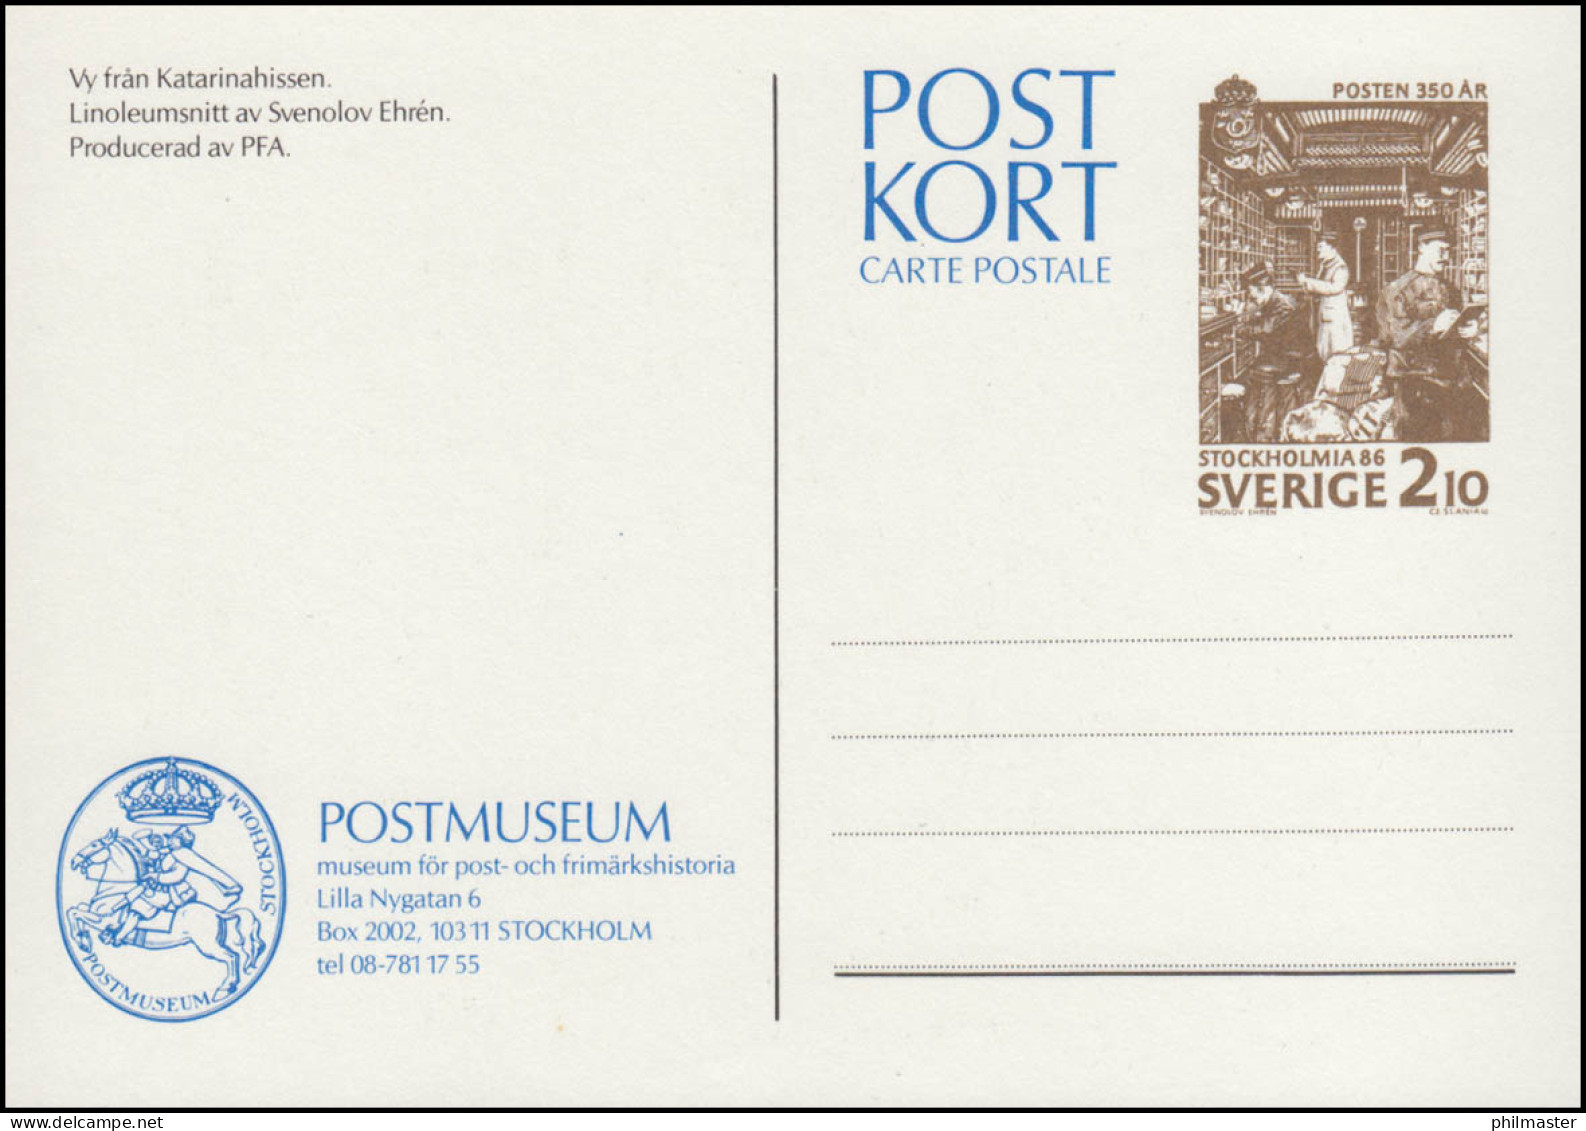 Schweden Postkarte P 107 350 Jahre Post 2,10 Krona 1986, ** Postfrisch - Postal Stationery